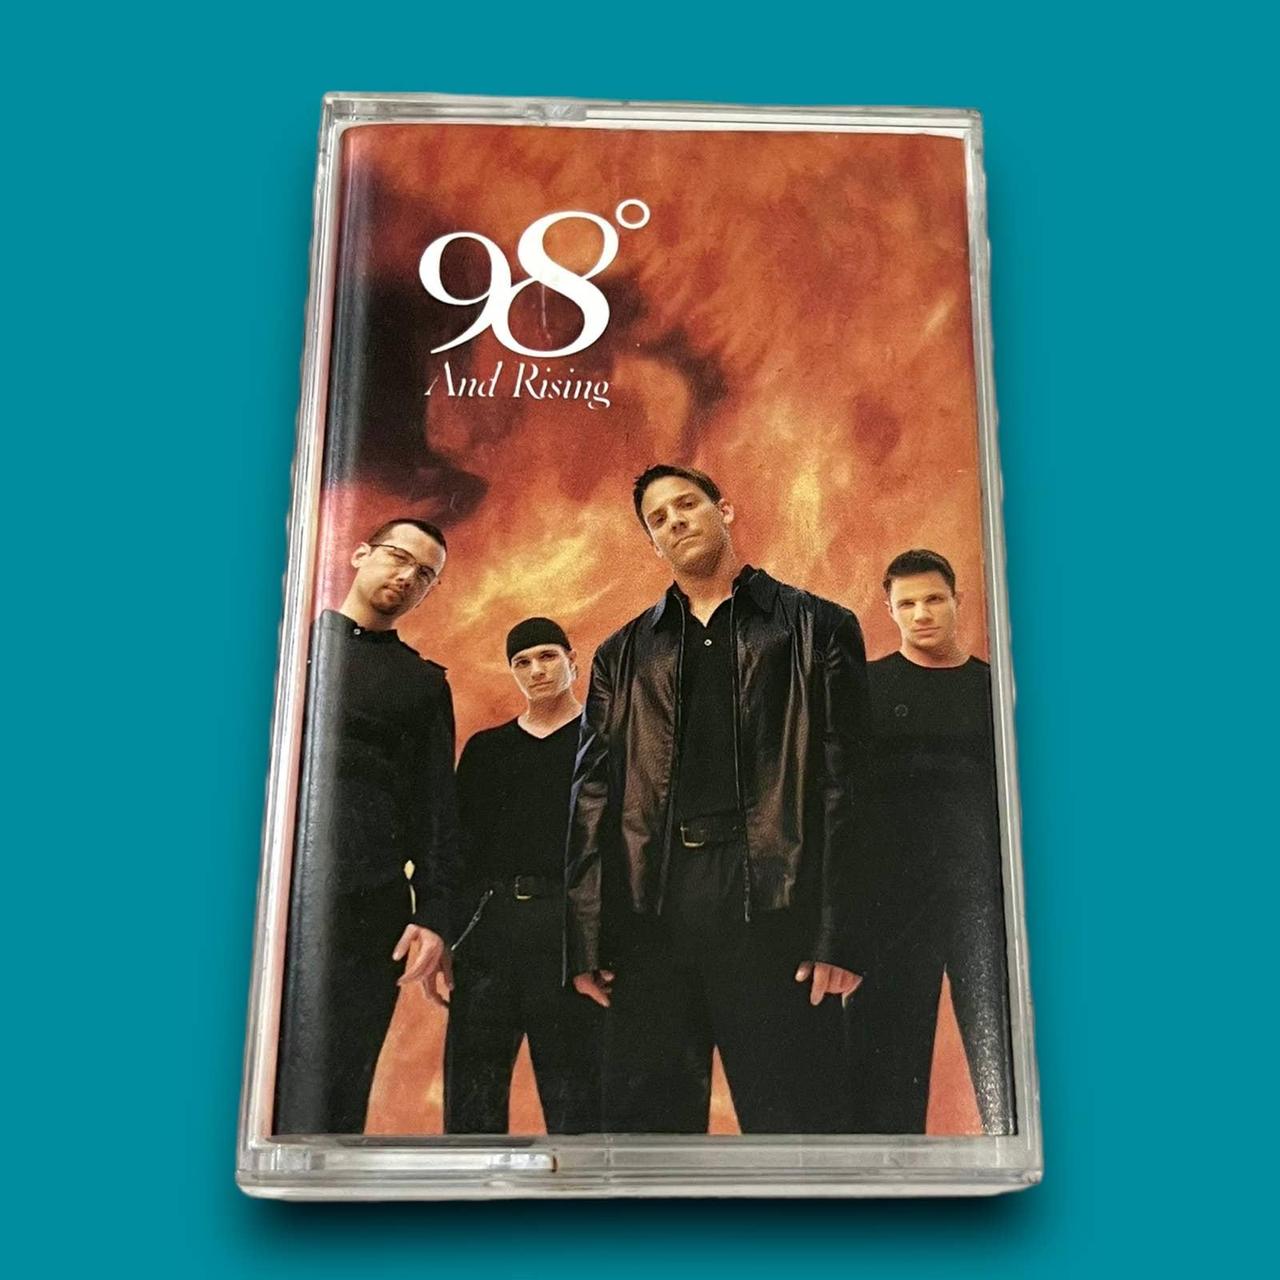  98 Degrees & Rising: CDs & Vinyl